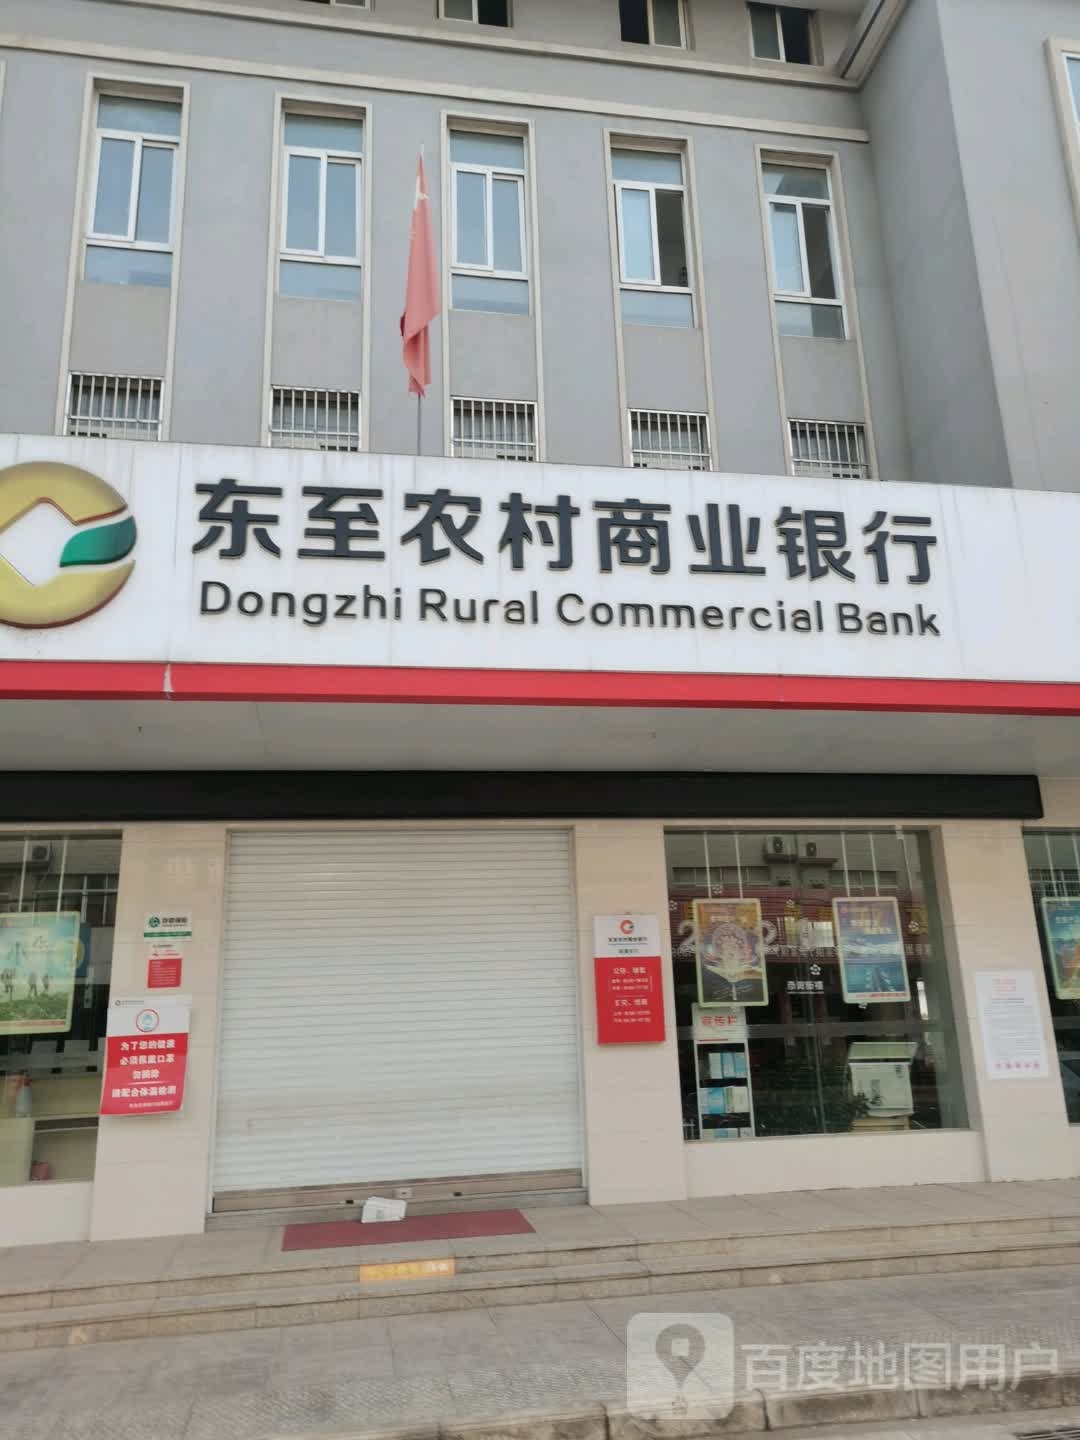 安徽省东至县农村商业银行(昭潭镇财政所东)